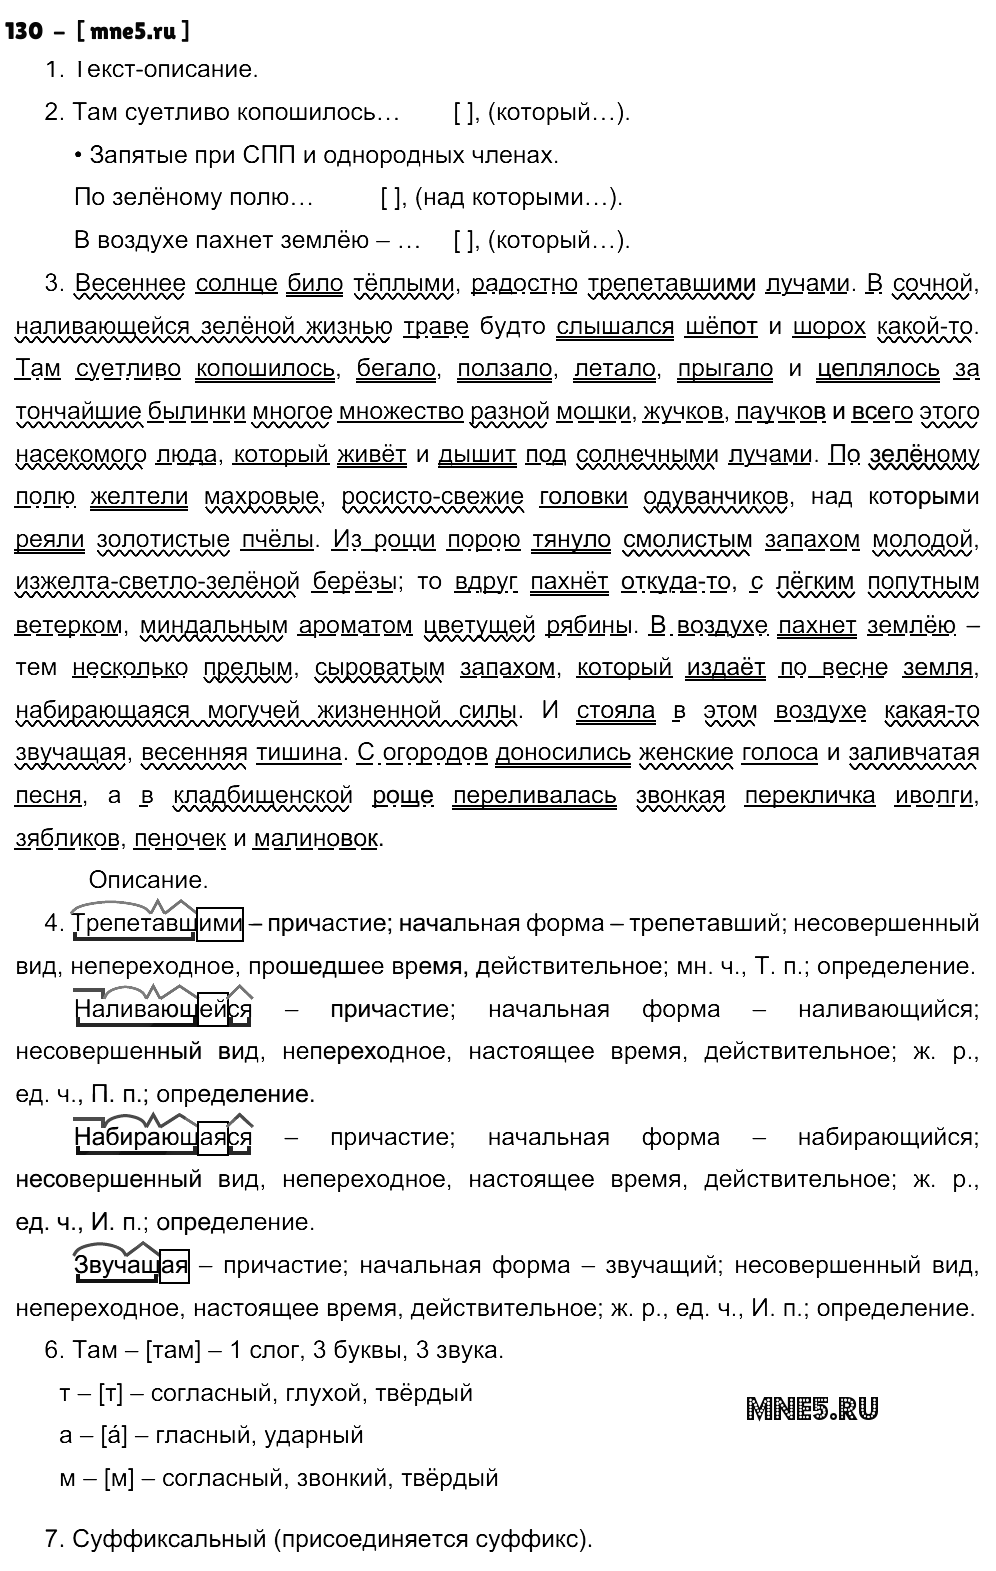 ГДЗ Русский язык 9 класс - 130